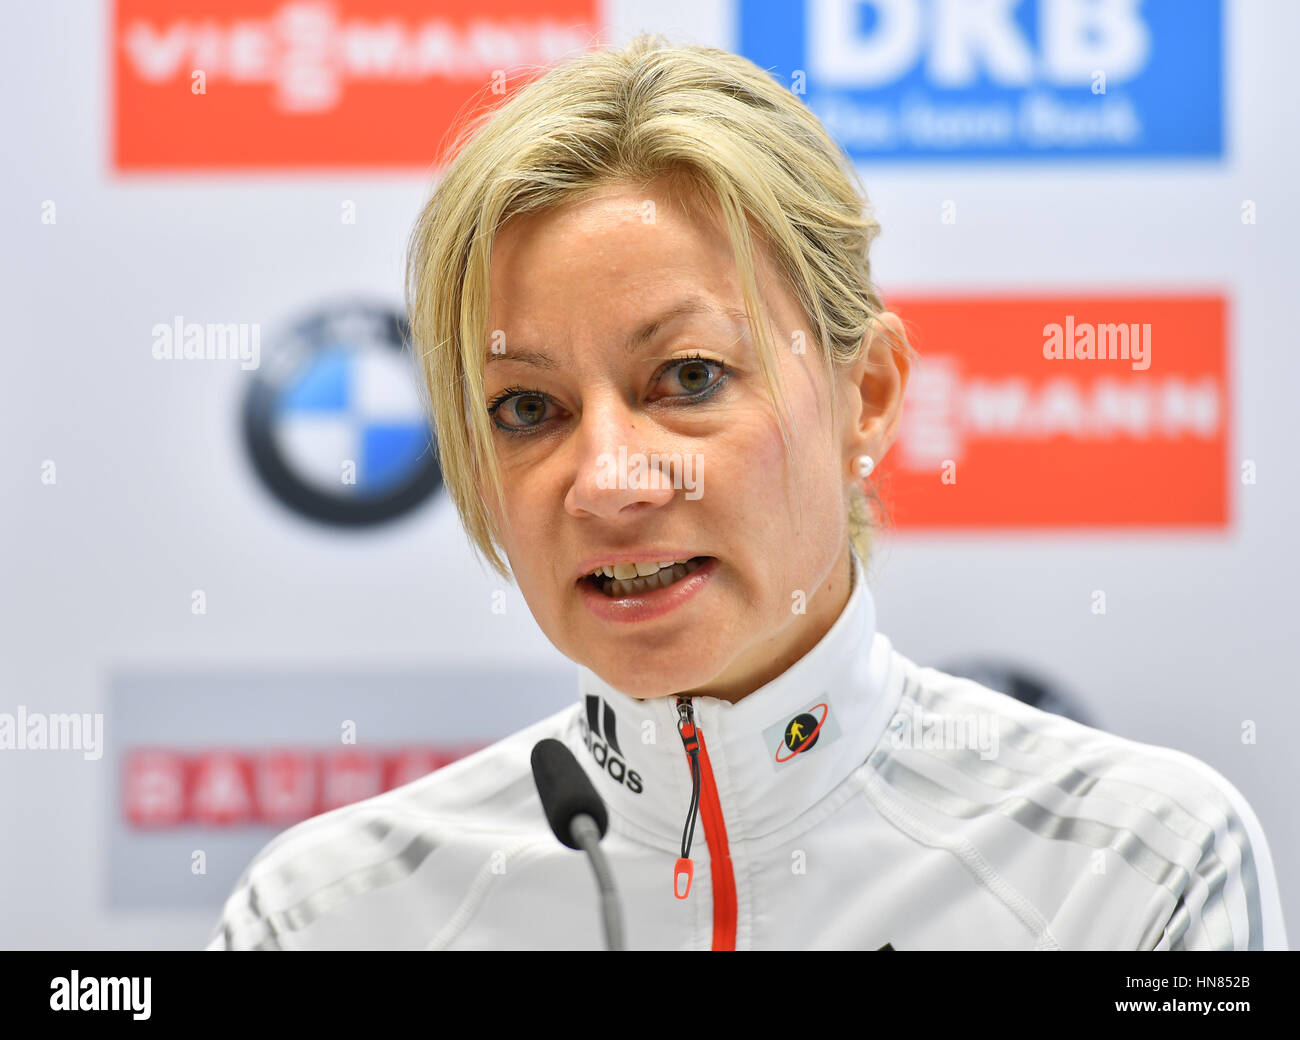 Secrétaire général de l'Union Internationale de Biathlon (IBU), Nicole  Resch, prend la parole lors d'une conférence de presse aux Championnats du  monde de biathlon, dans l'Arène de ski de Holmenkollen, Oslo, Norvège,